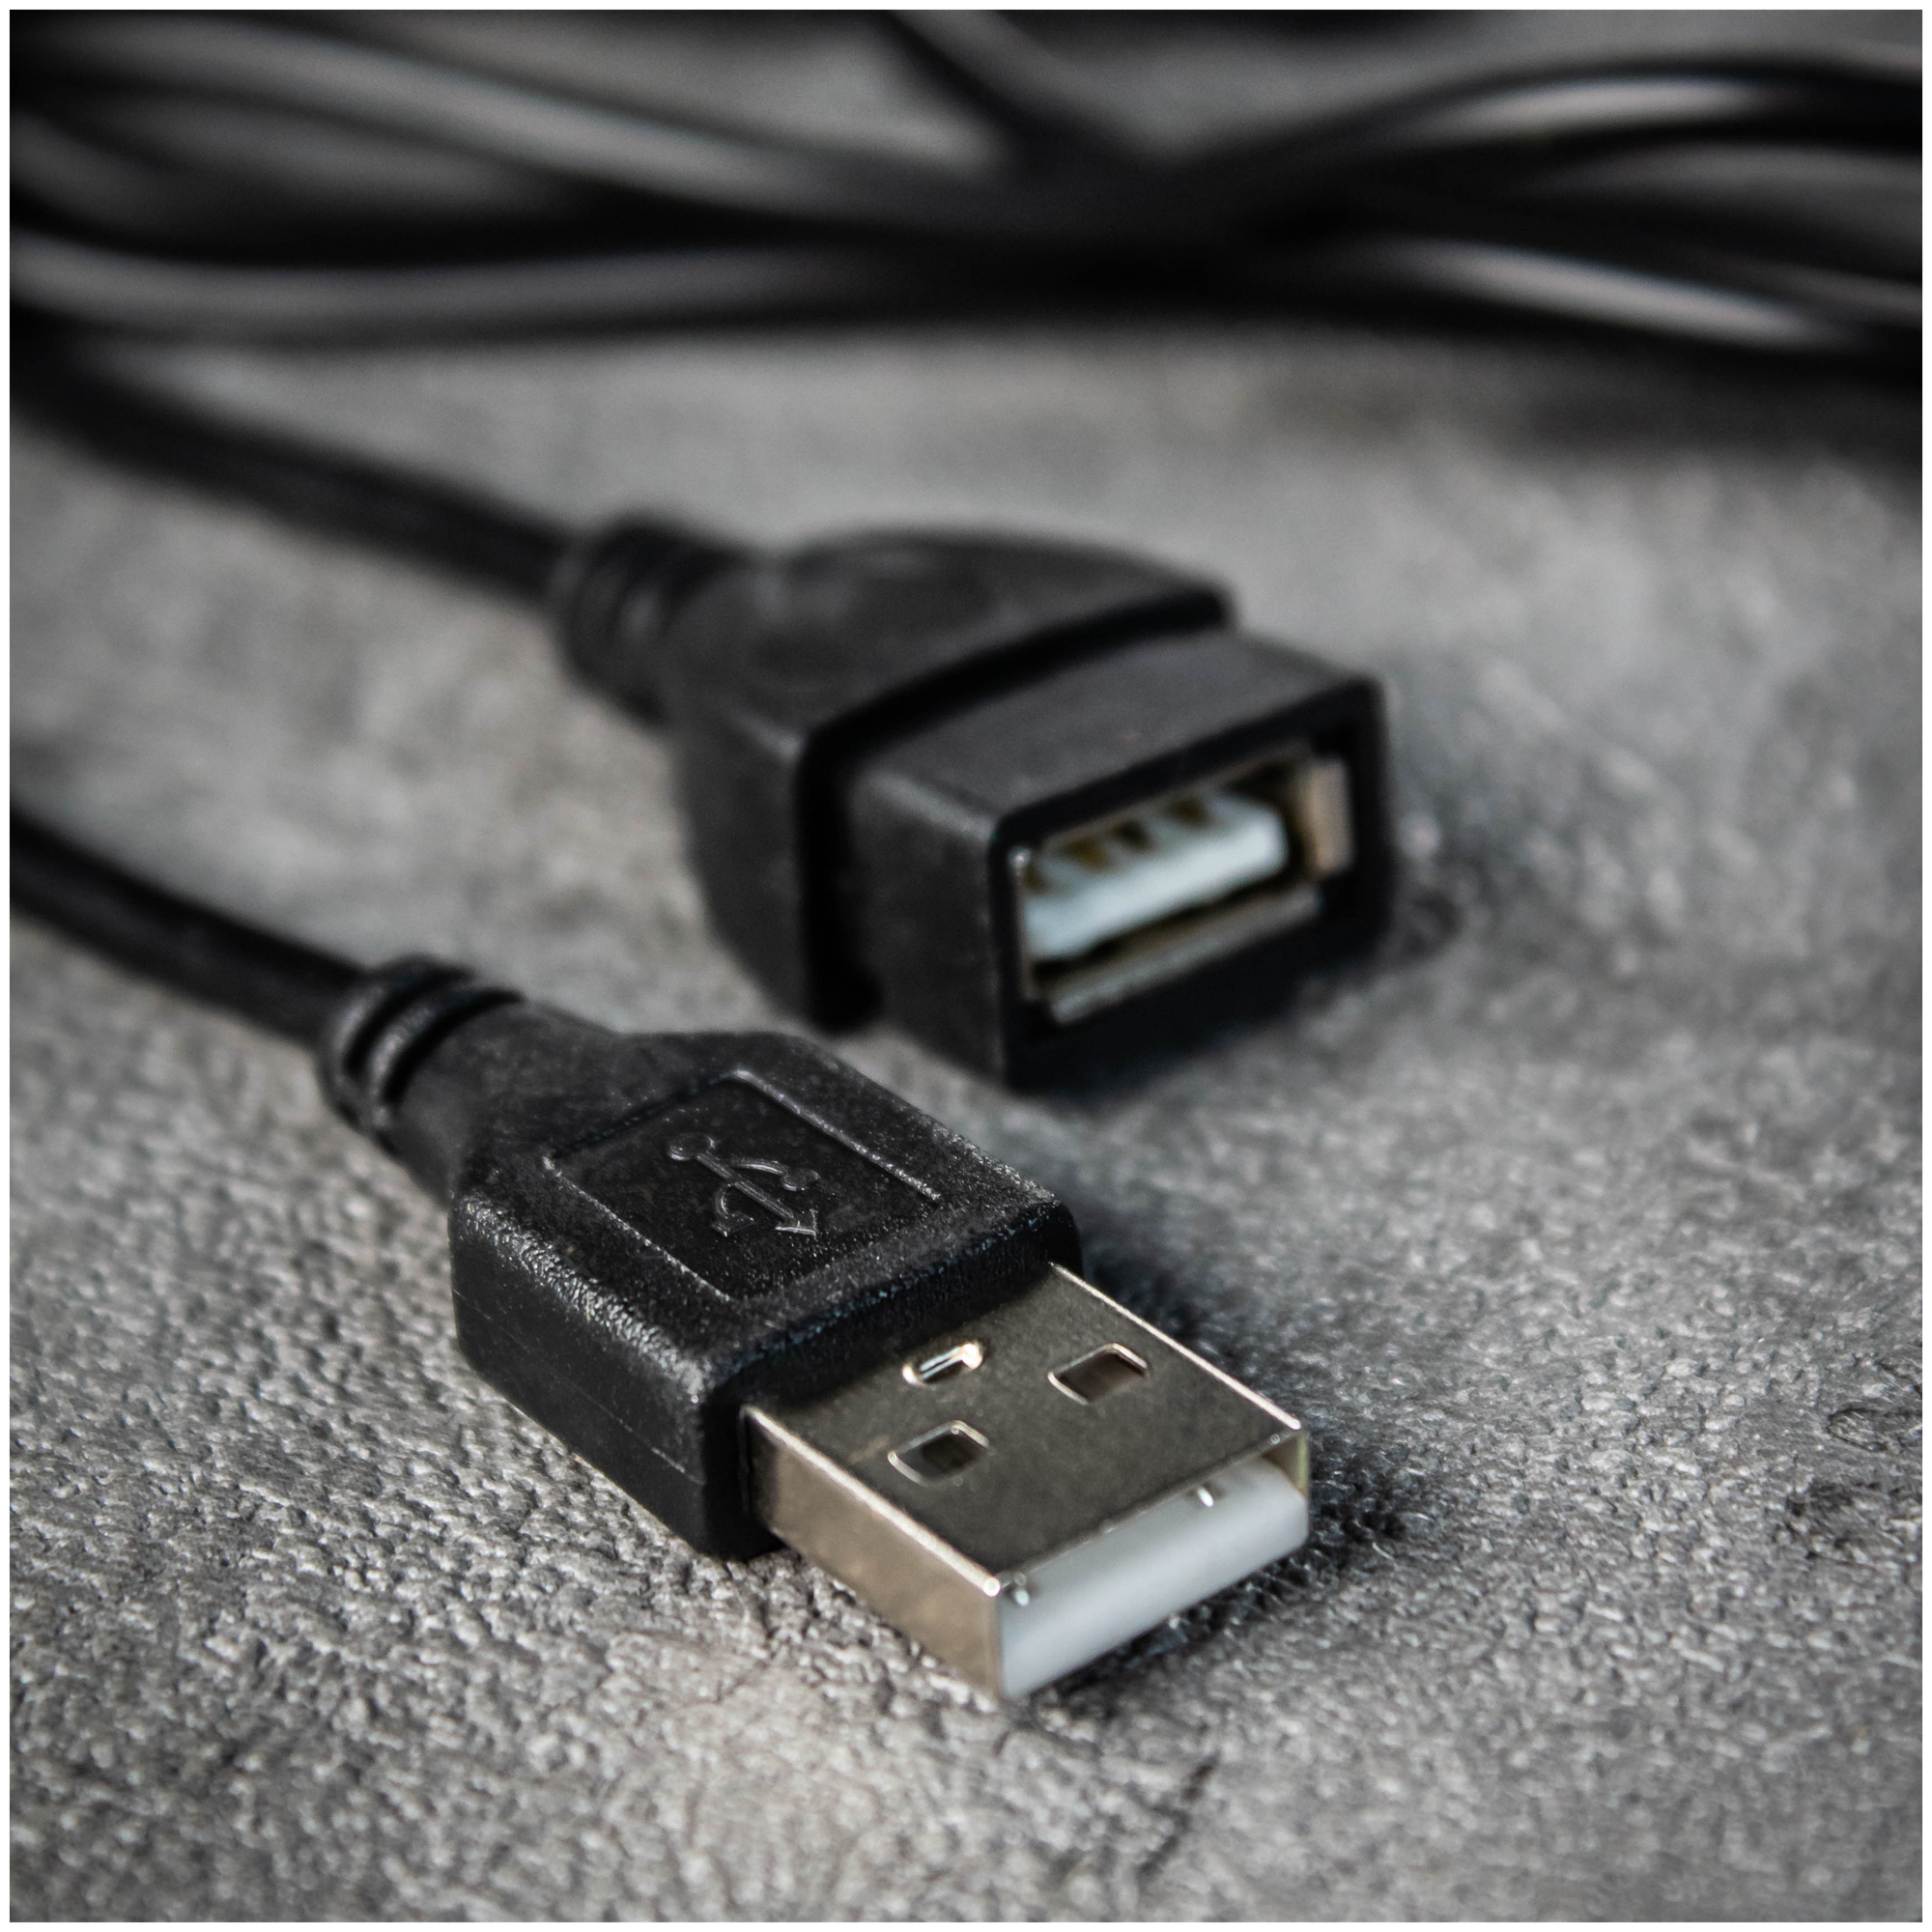 Удлинитель кабеля USB для компьютера AMFOX A - B "папа-мама"